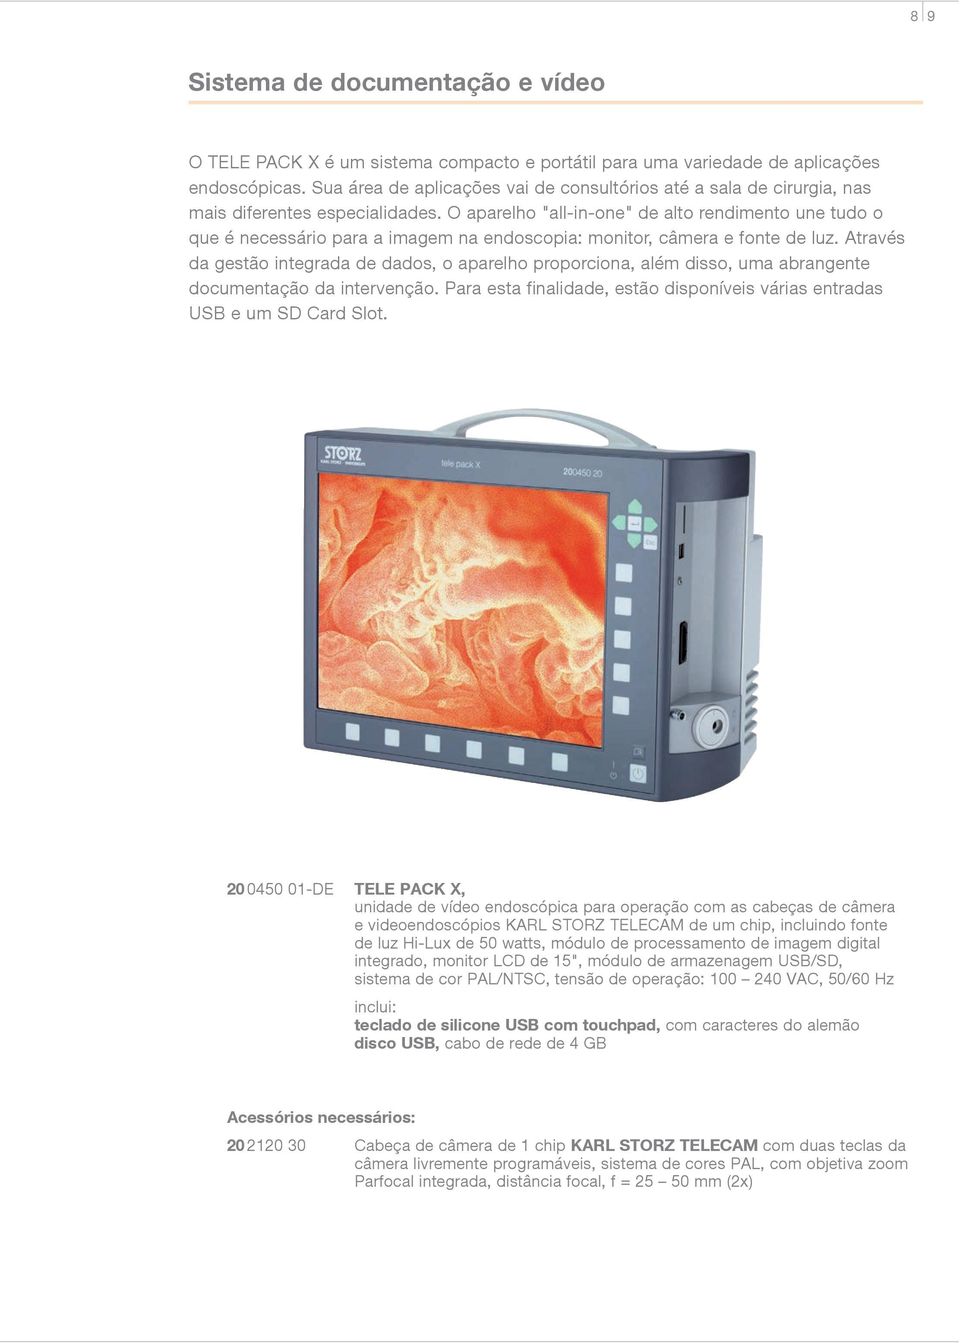 O aparelho "all-in-one" de alto rendimento une tudo o que é necessário para a imagem na endoscopia: monitor, câmera e fonte de luz.